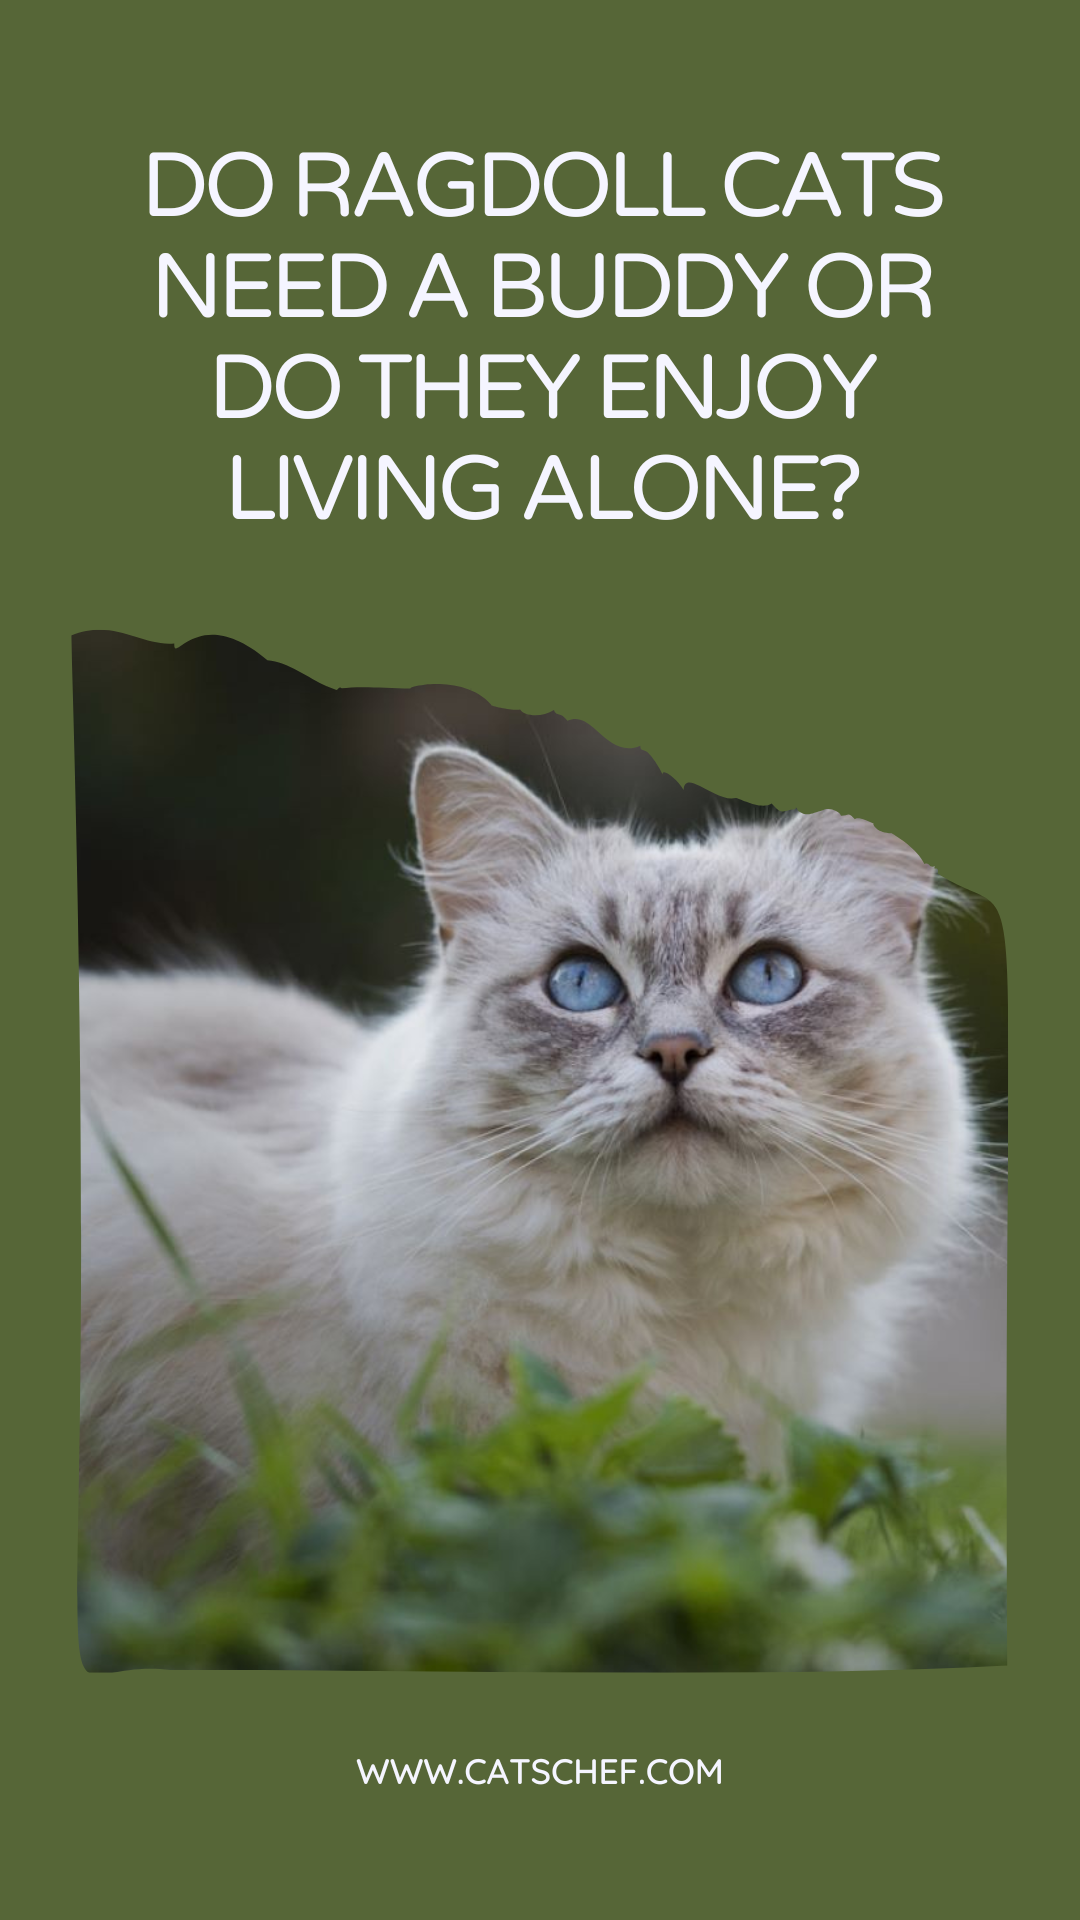 Ragdoll Kedilerin Bir Arkadaşa İhtiyacı Var mı Yoksa Yalnız Yaşamaktan Hoşlanıyorlar mı?